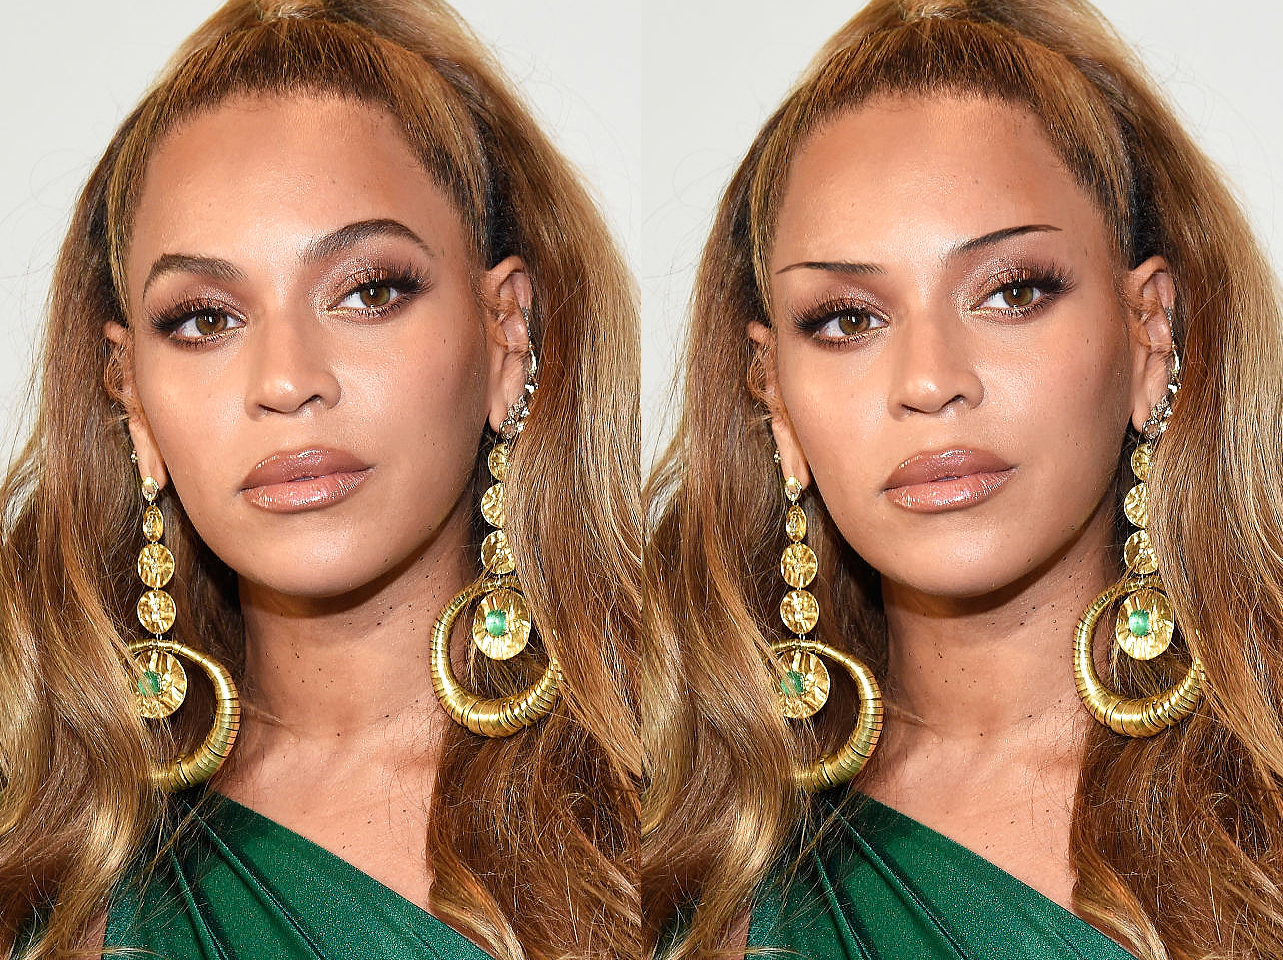 Las cejas características de Beyonce de 2017 frente a un look de cejas finas editado digitalmente | Fuente: Getty Images